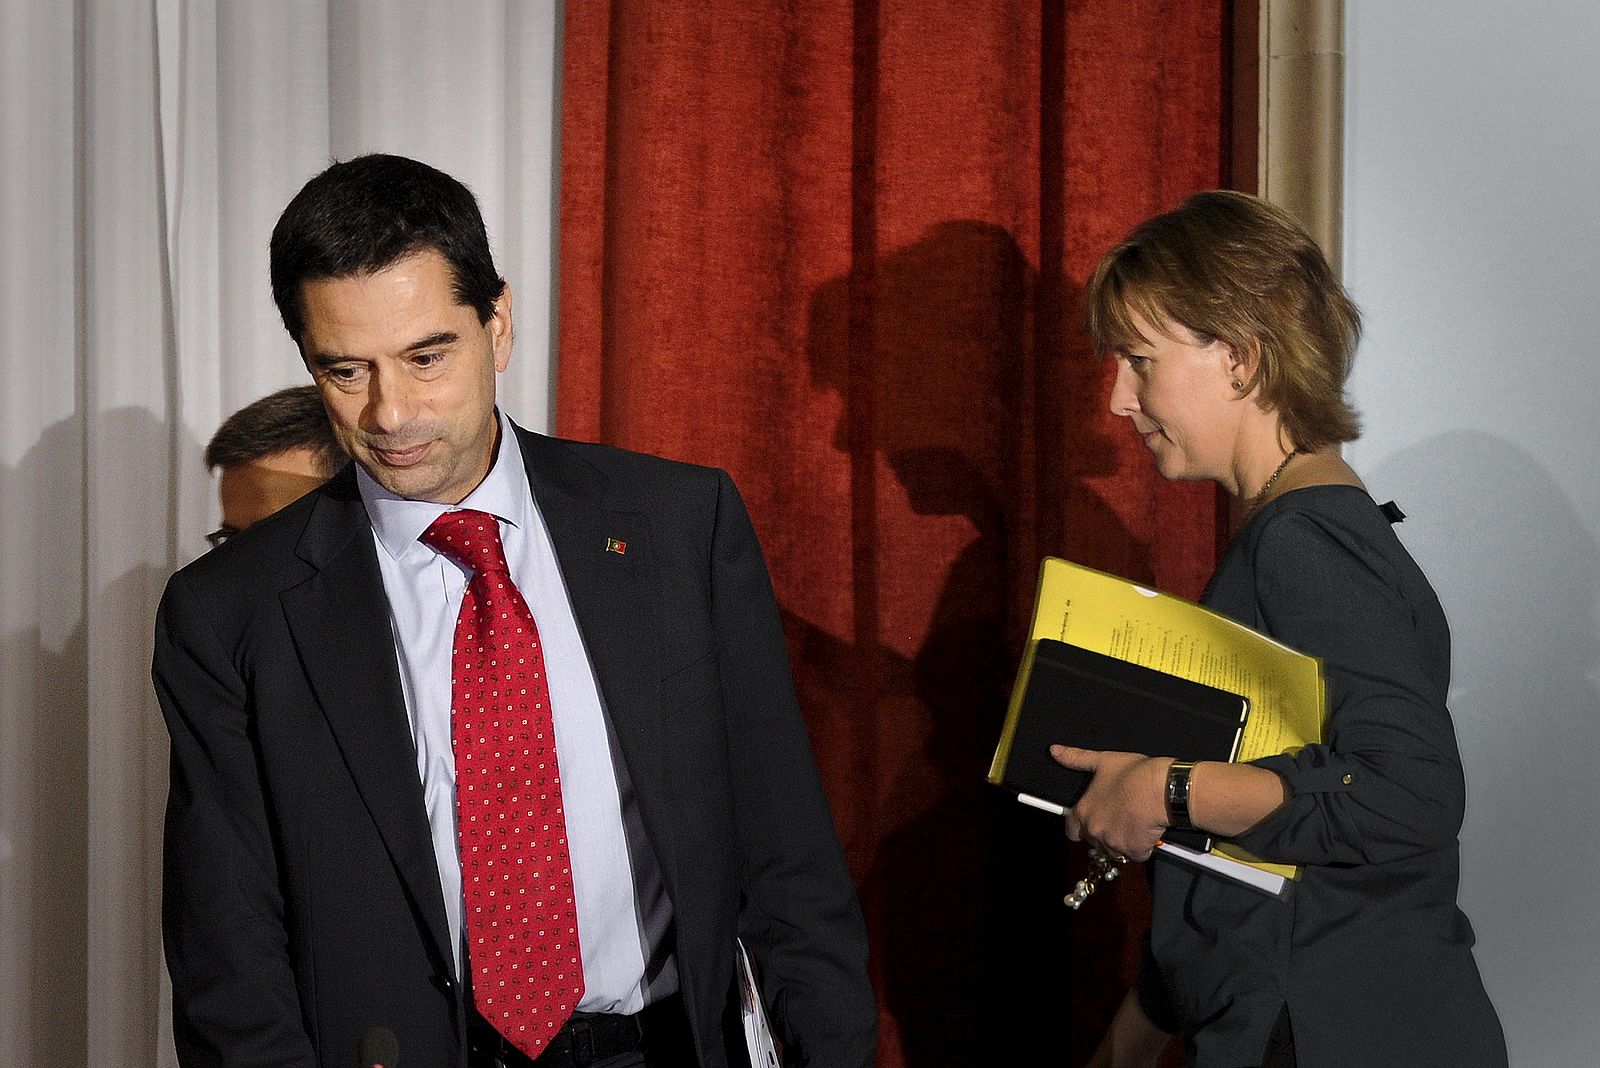 Foto de archivo (3 de octubre de 2012) en la que se ve al dimisionario ministro Vitor Gaspar junto a la nueva ministra de Finanzas, Maria Luis Albuquerque